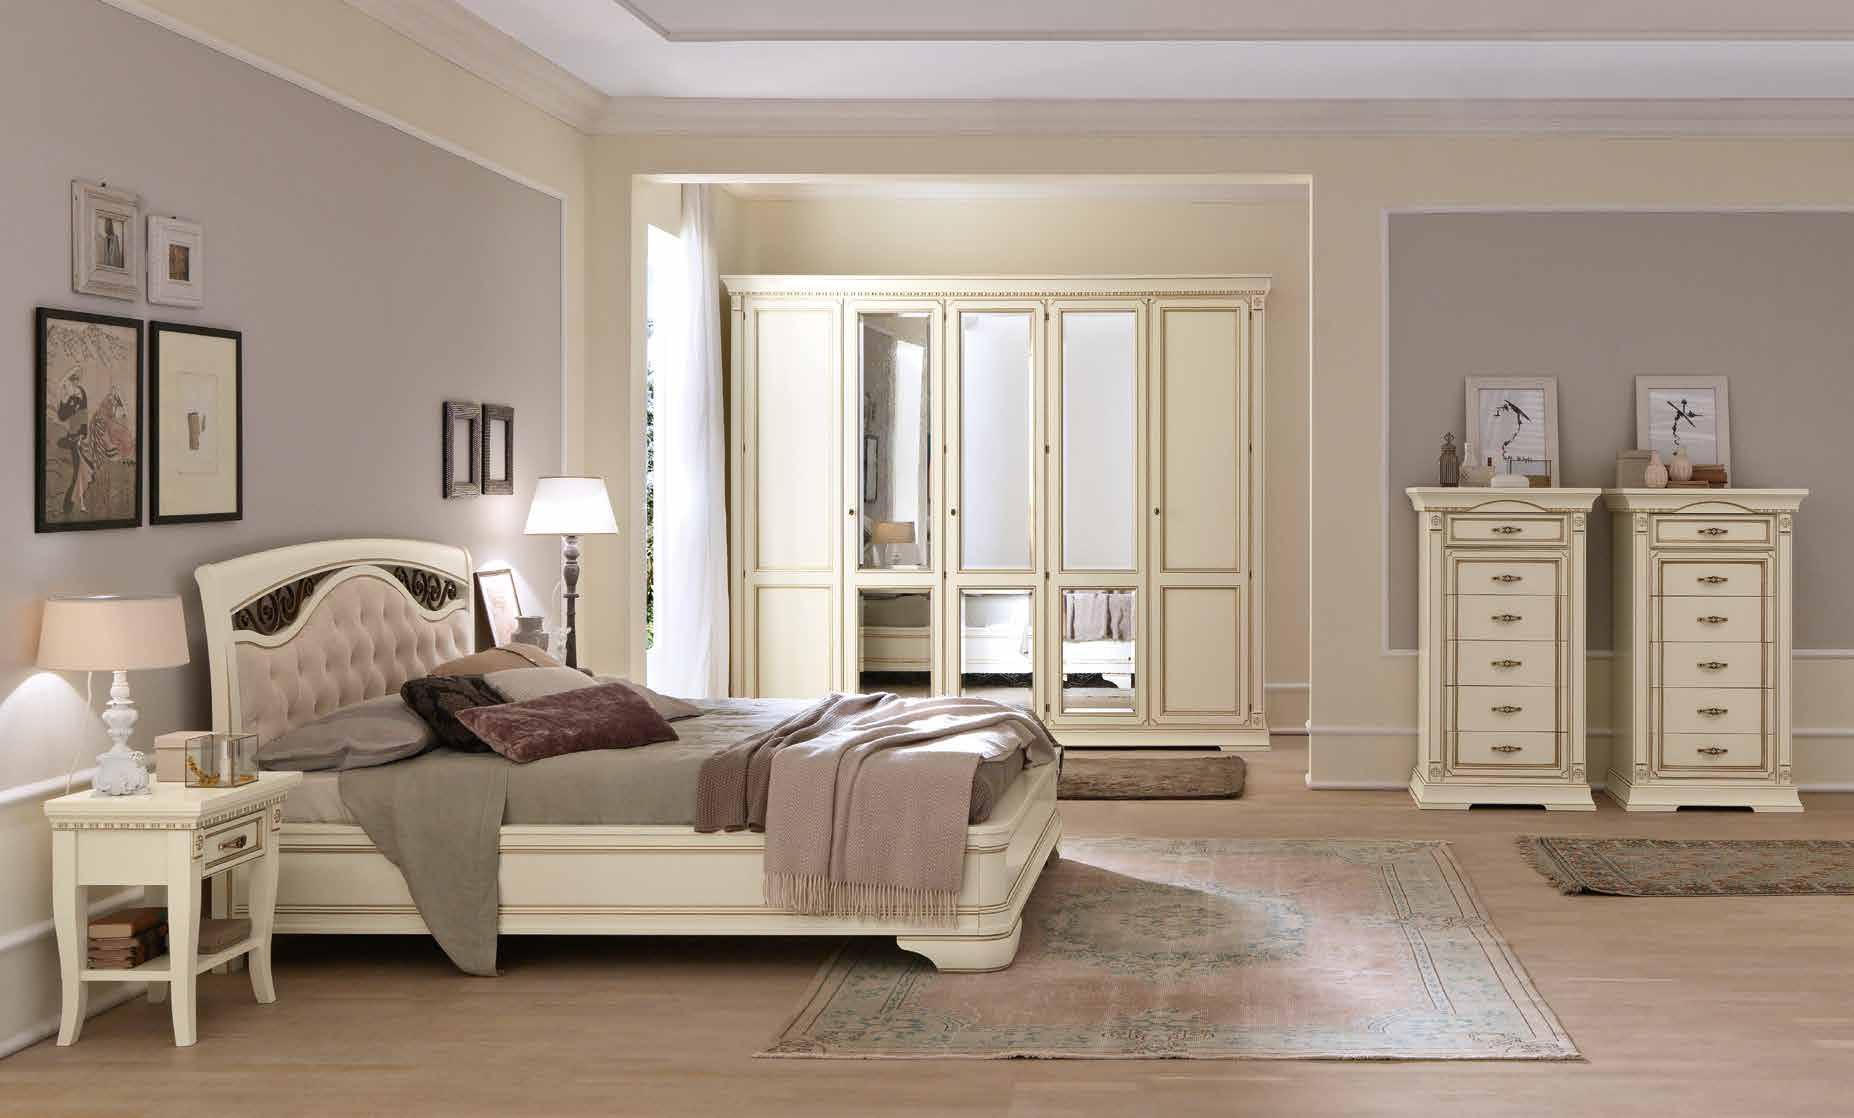 Кровать Prama Palazzo Ducale laccato, двуспальная, с мягким изголовьем, с ковкой, без изножья, цвет: белый с золотом, 180x200 см (71BO75LT)71BO75LT